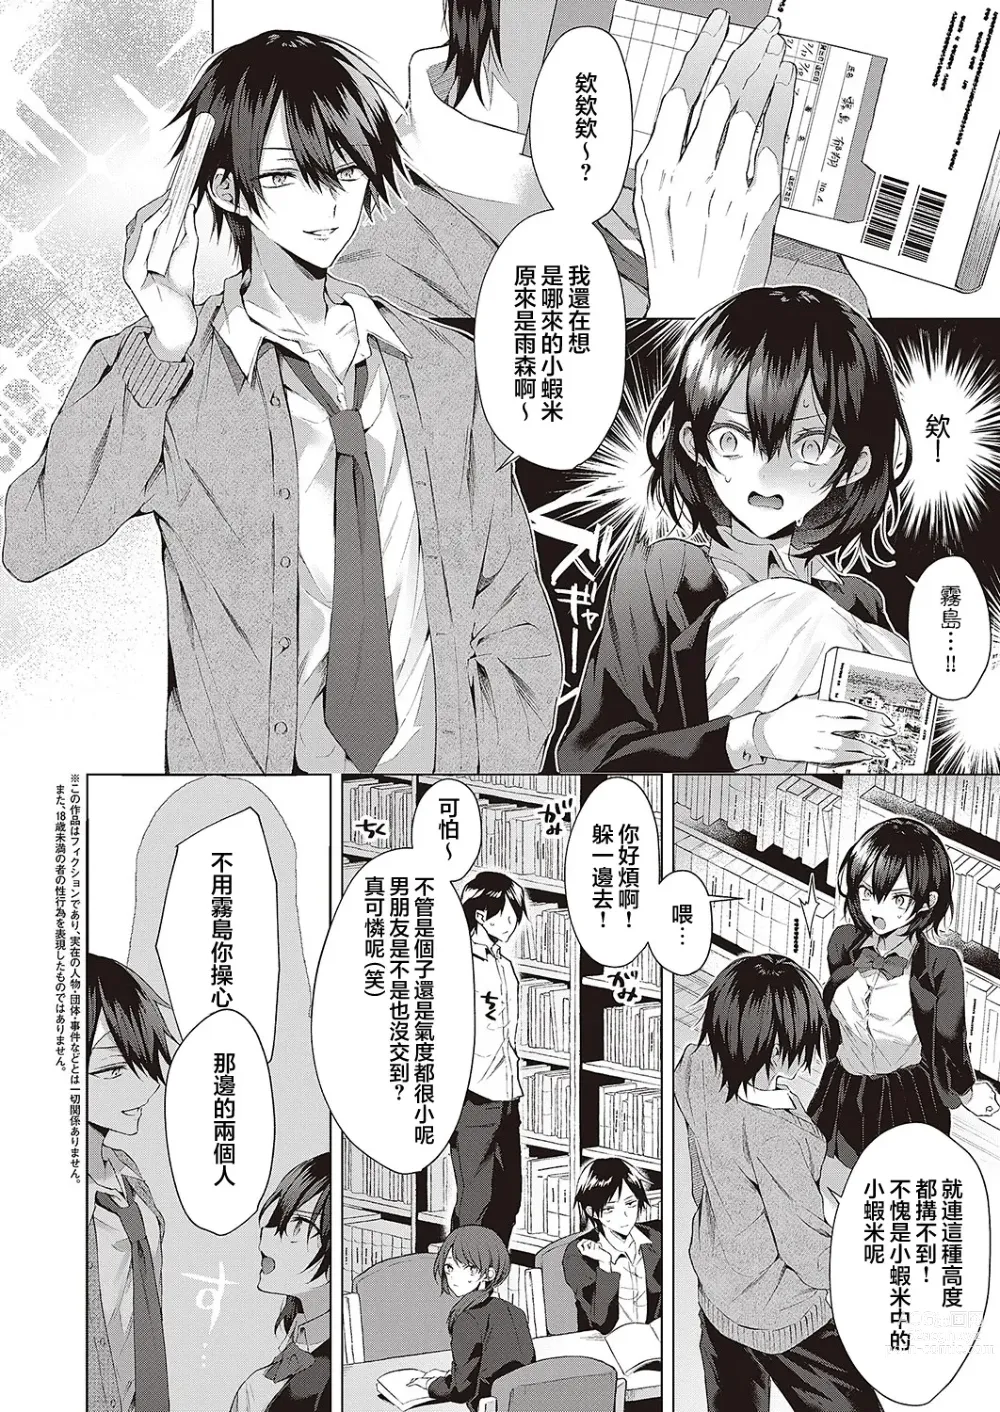 Page 2 of manga OUTOTSU Lovemotion!